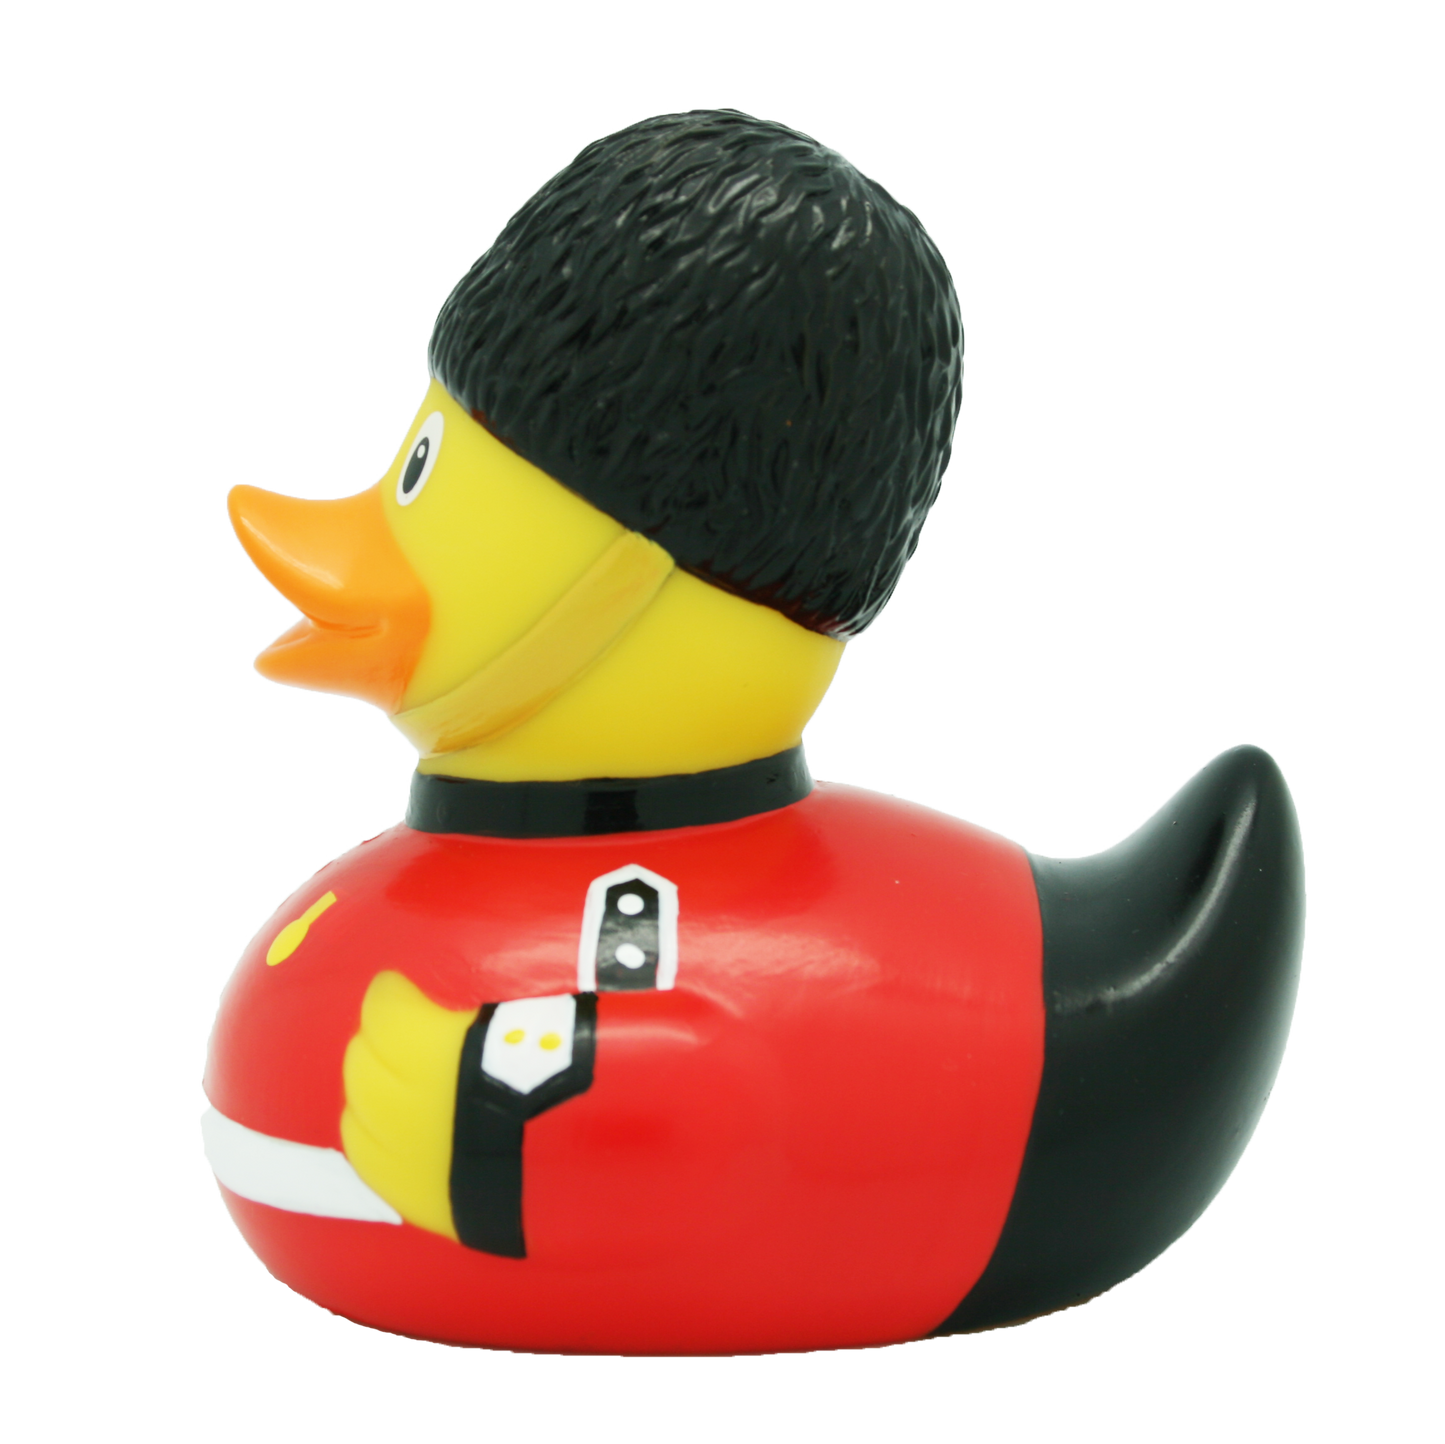 Duck Guard Royal.